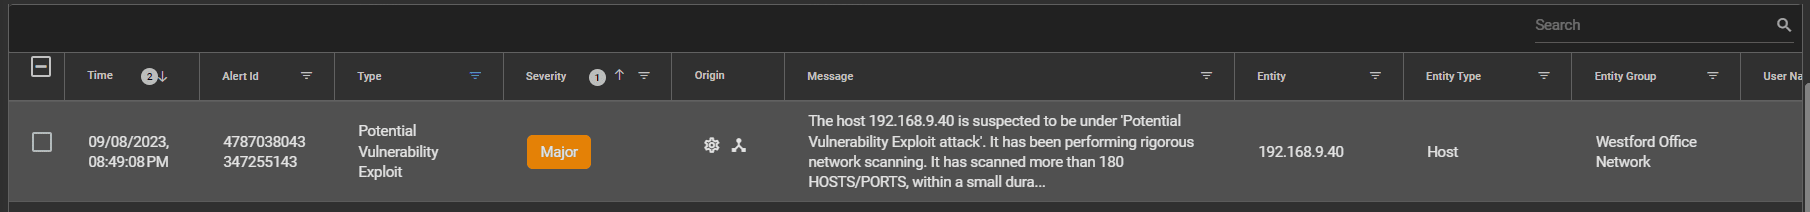 Vulnerability Exploits